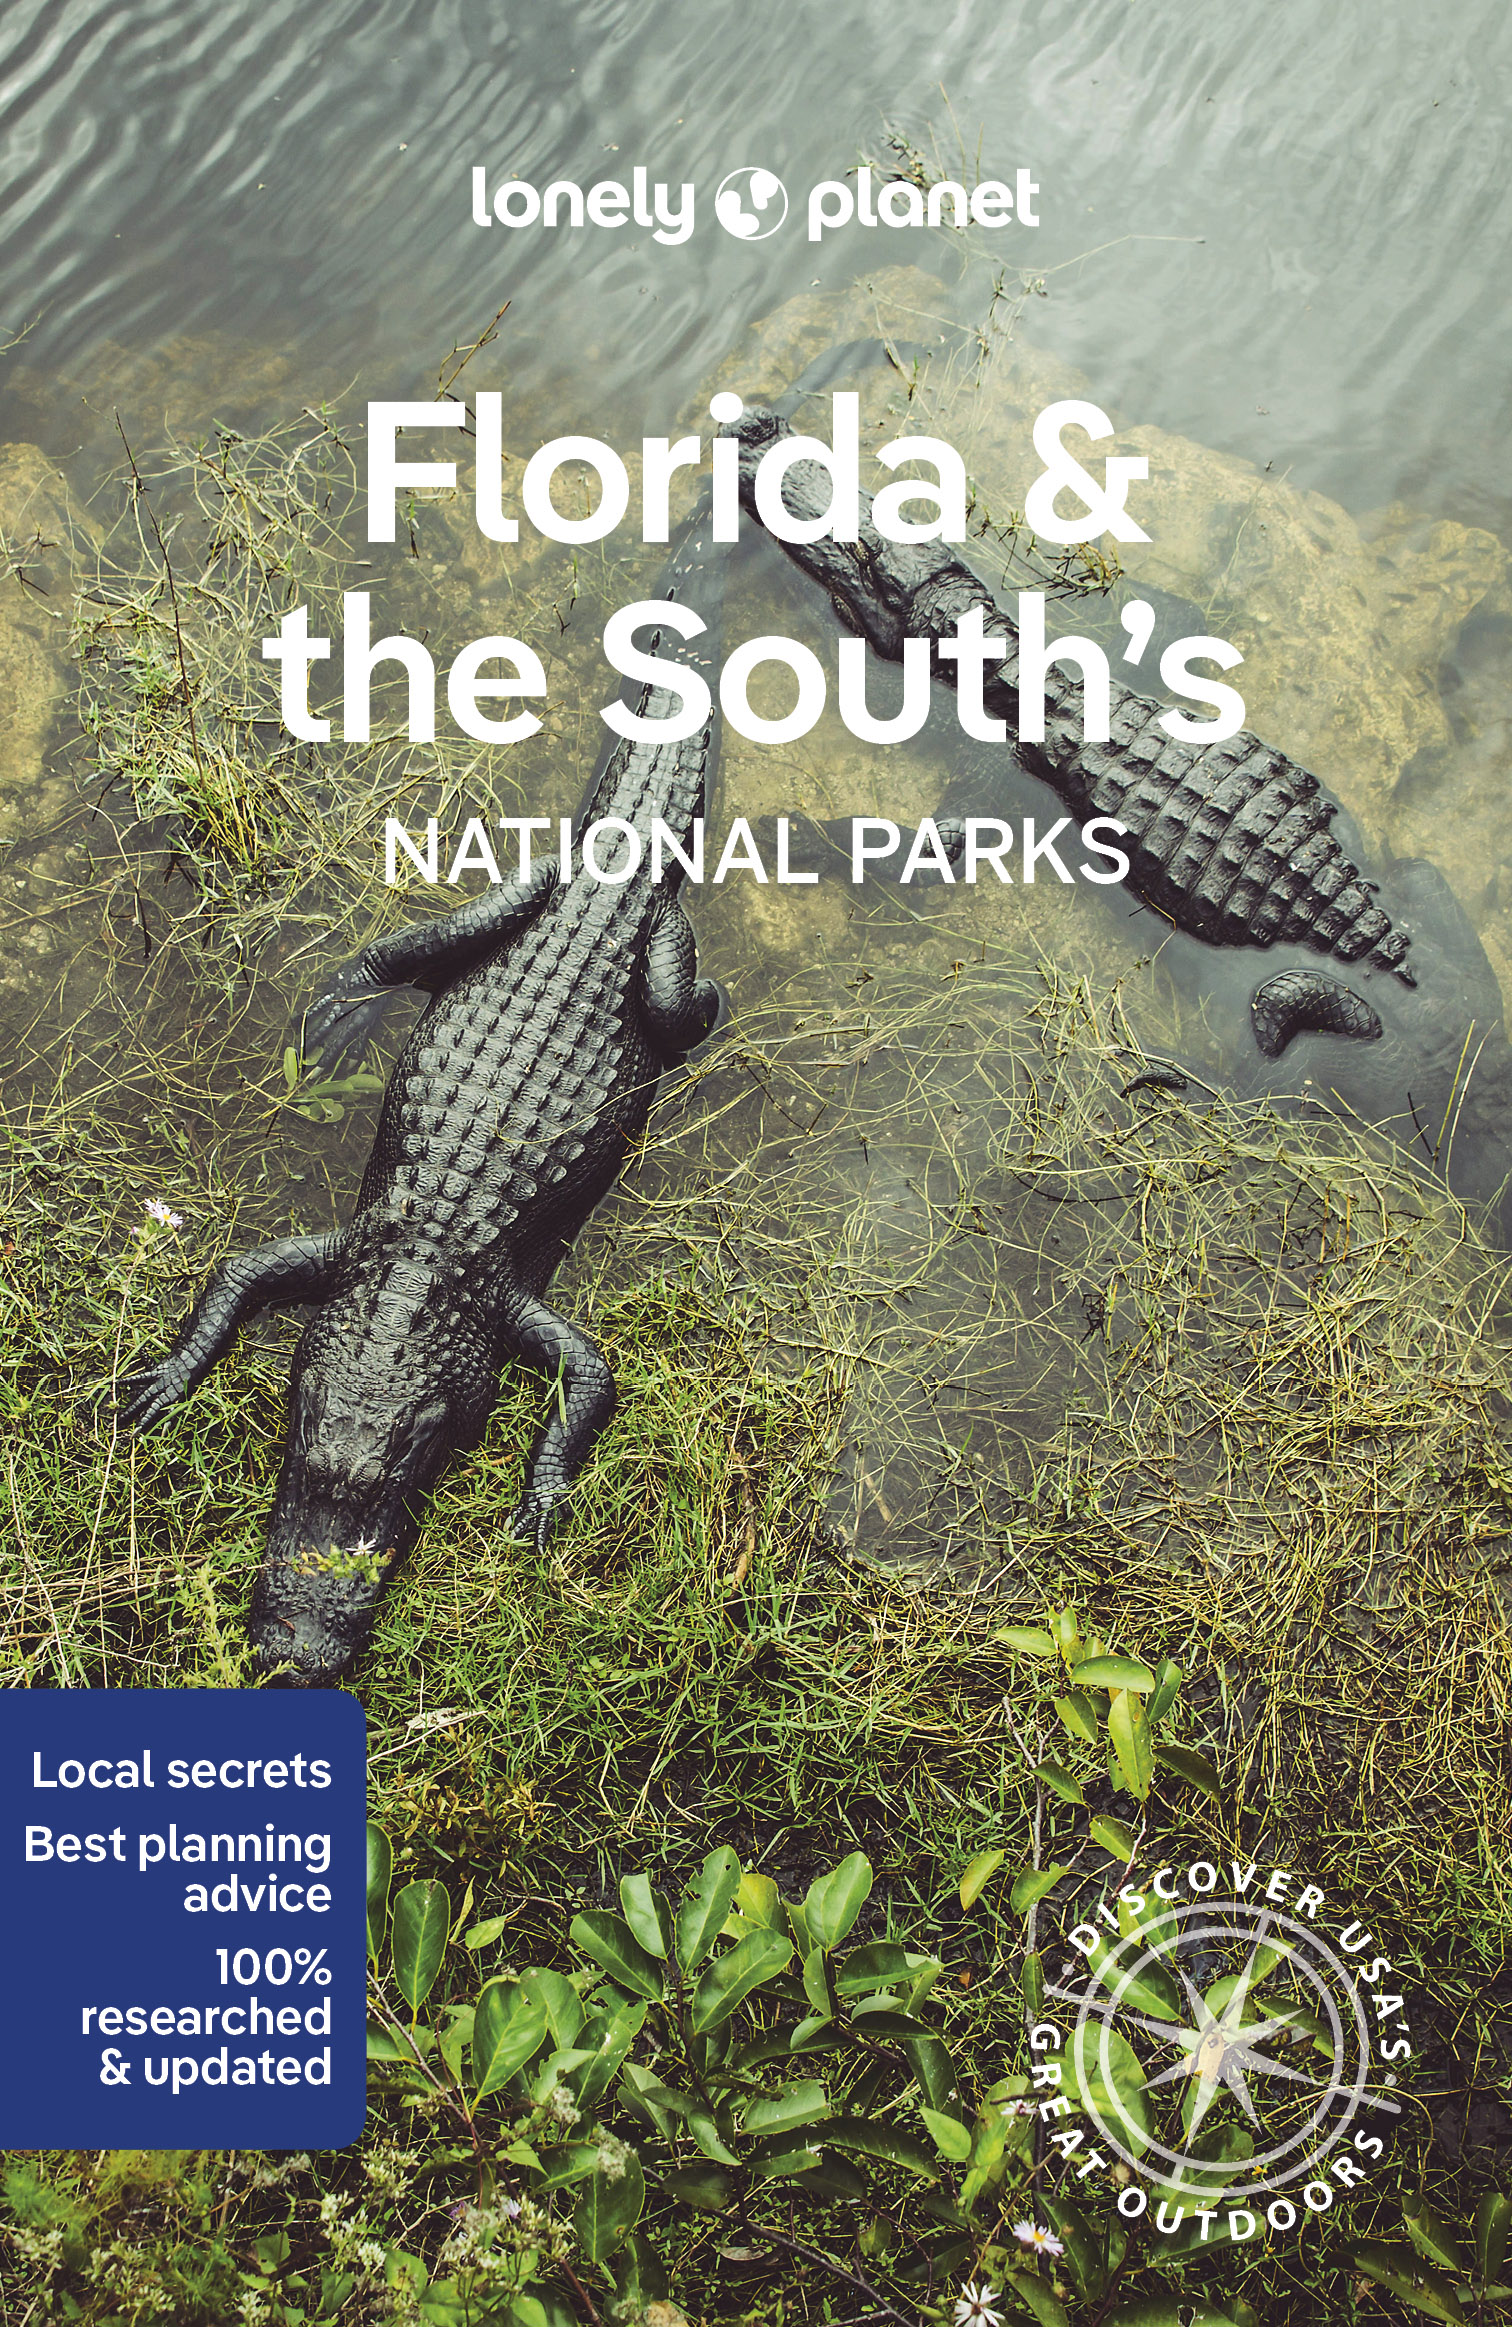 průvodce Florida & the South nat. park anglicky Lonely Planet